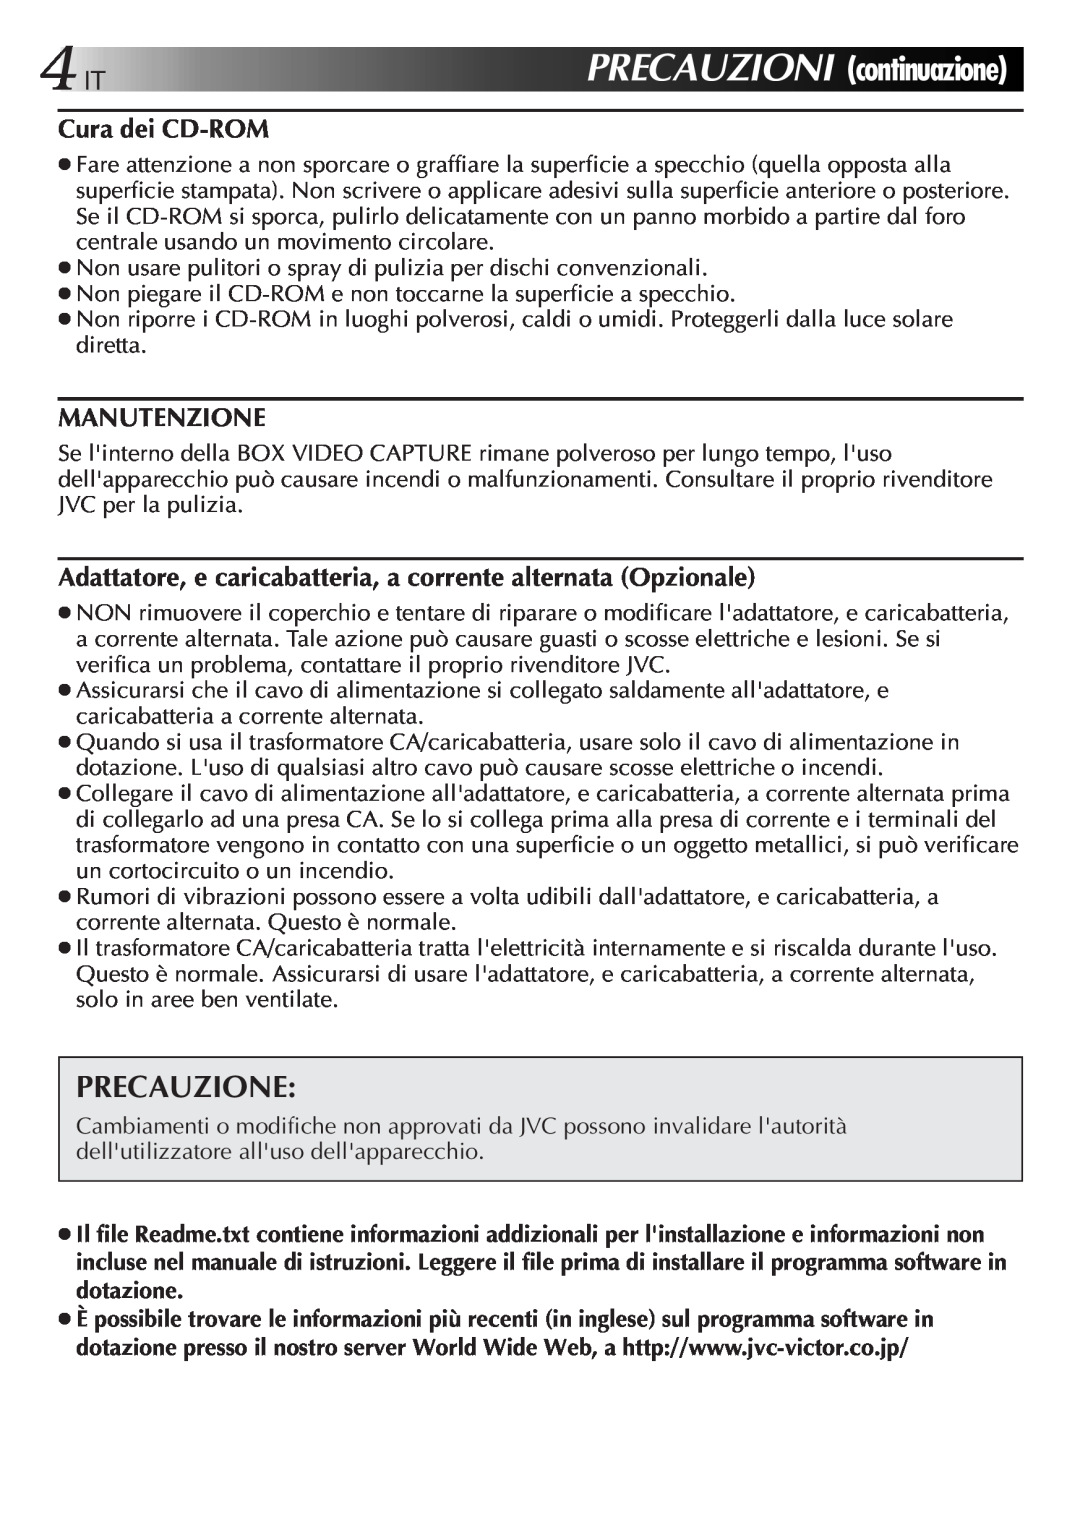 JVC GV-CB3E manual 4ITPRECAUZIONI, Precauzione, continuazione 